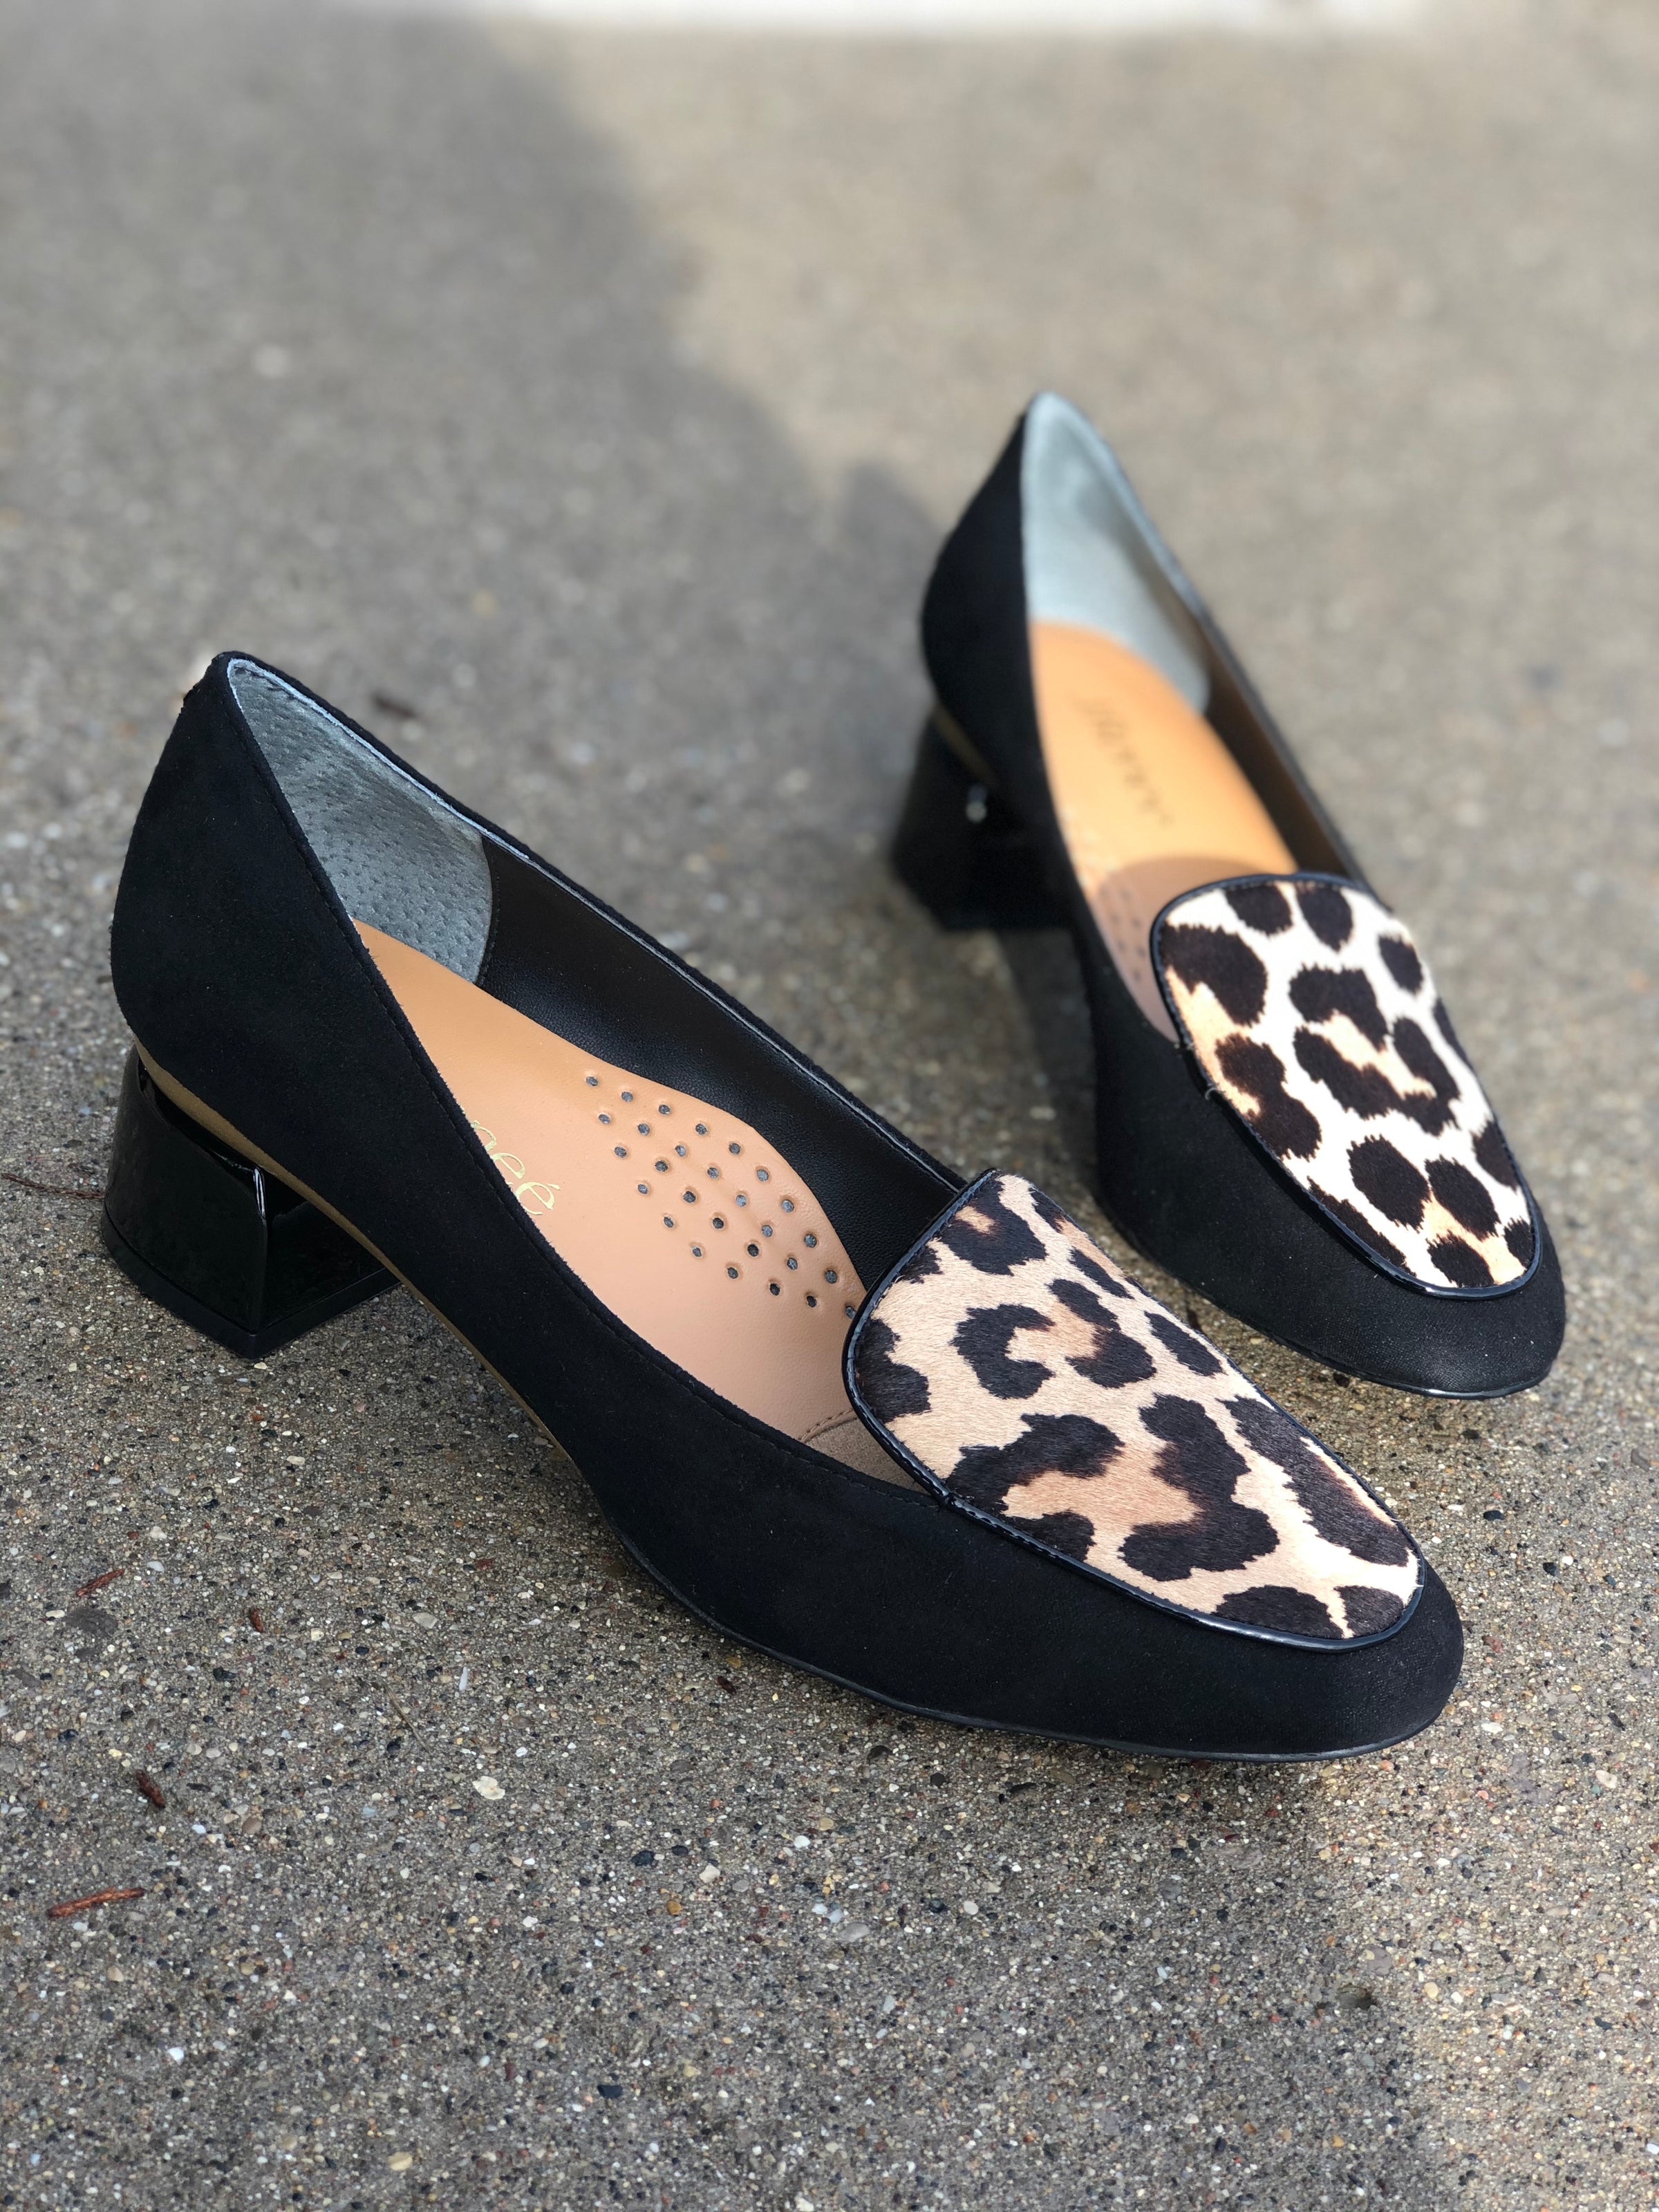 j renee leopard shoes